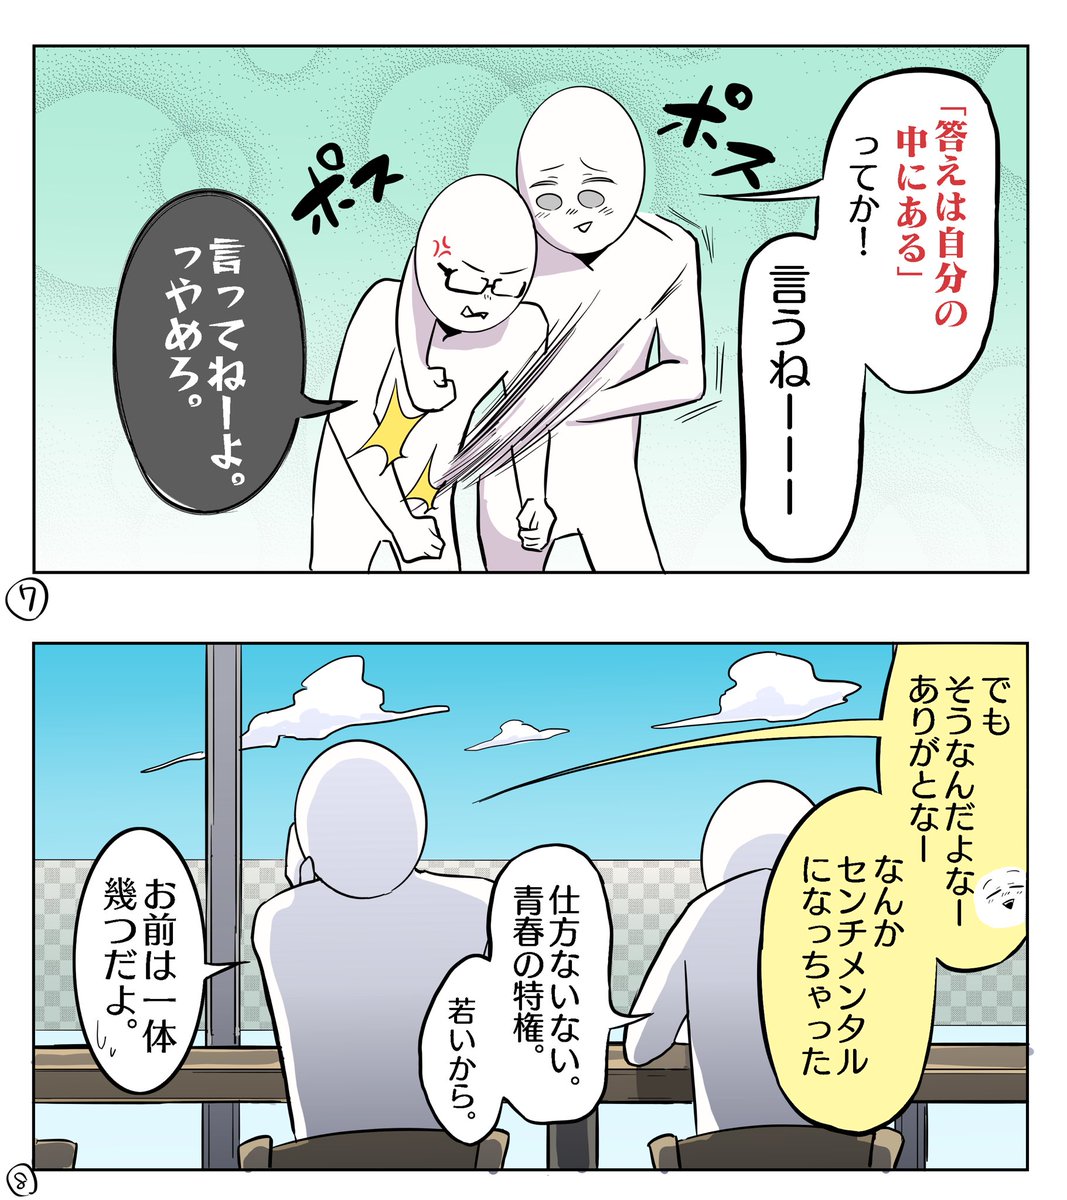 先日載せた阪南大学のPR動画の漫画バージョンです!✨✨

ココから編集で動かしてもらって、声を当ててもらって(小野賢章さん、内田真礼さん)
あんな風な動画になるんですよ…スゴすぎ…?感激…✨ 